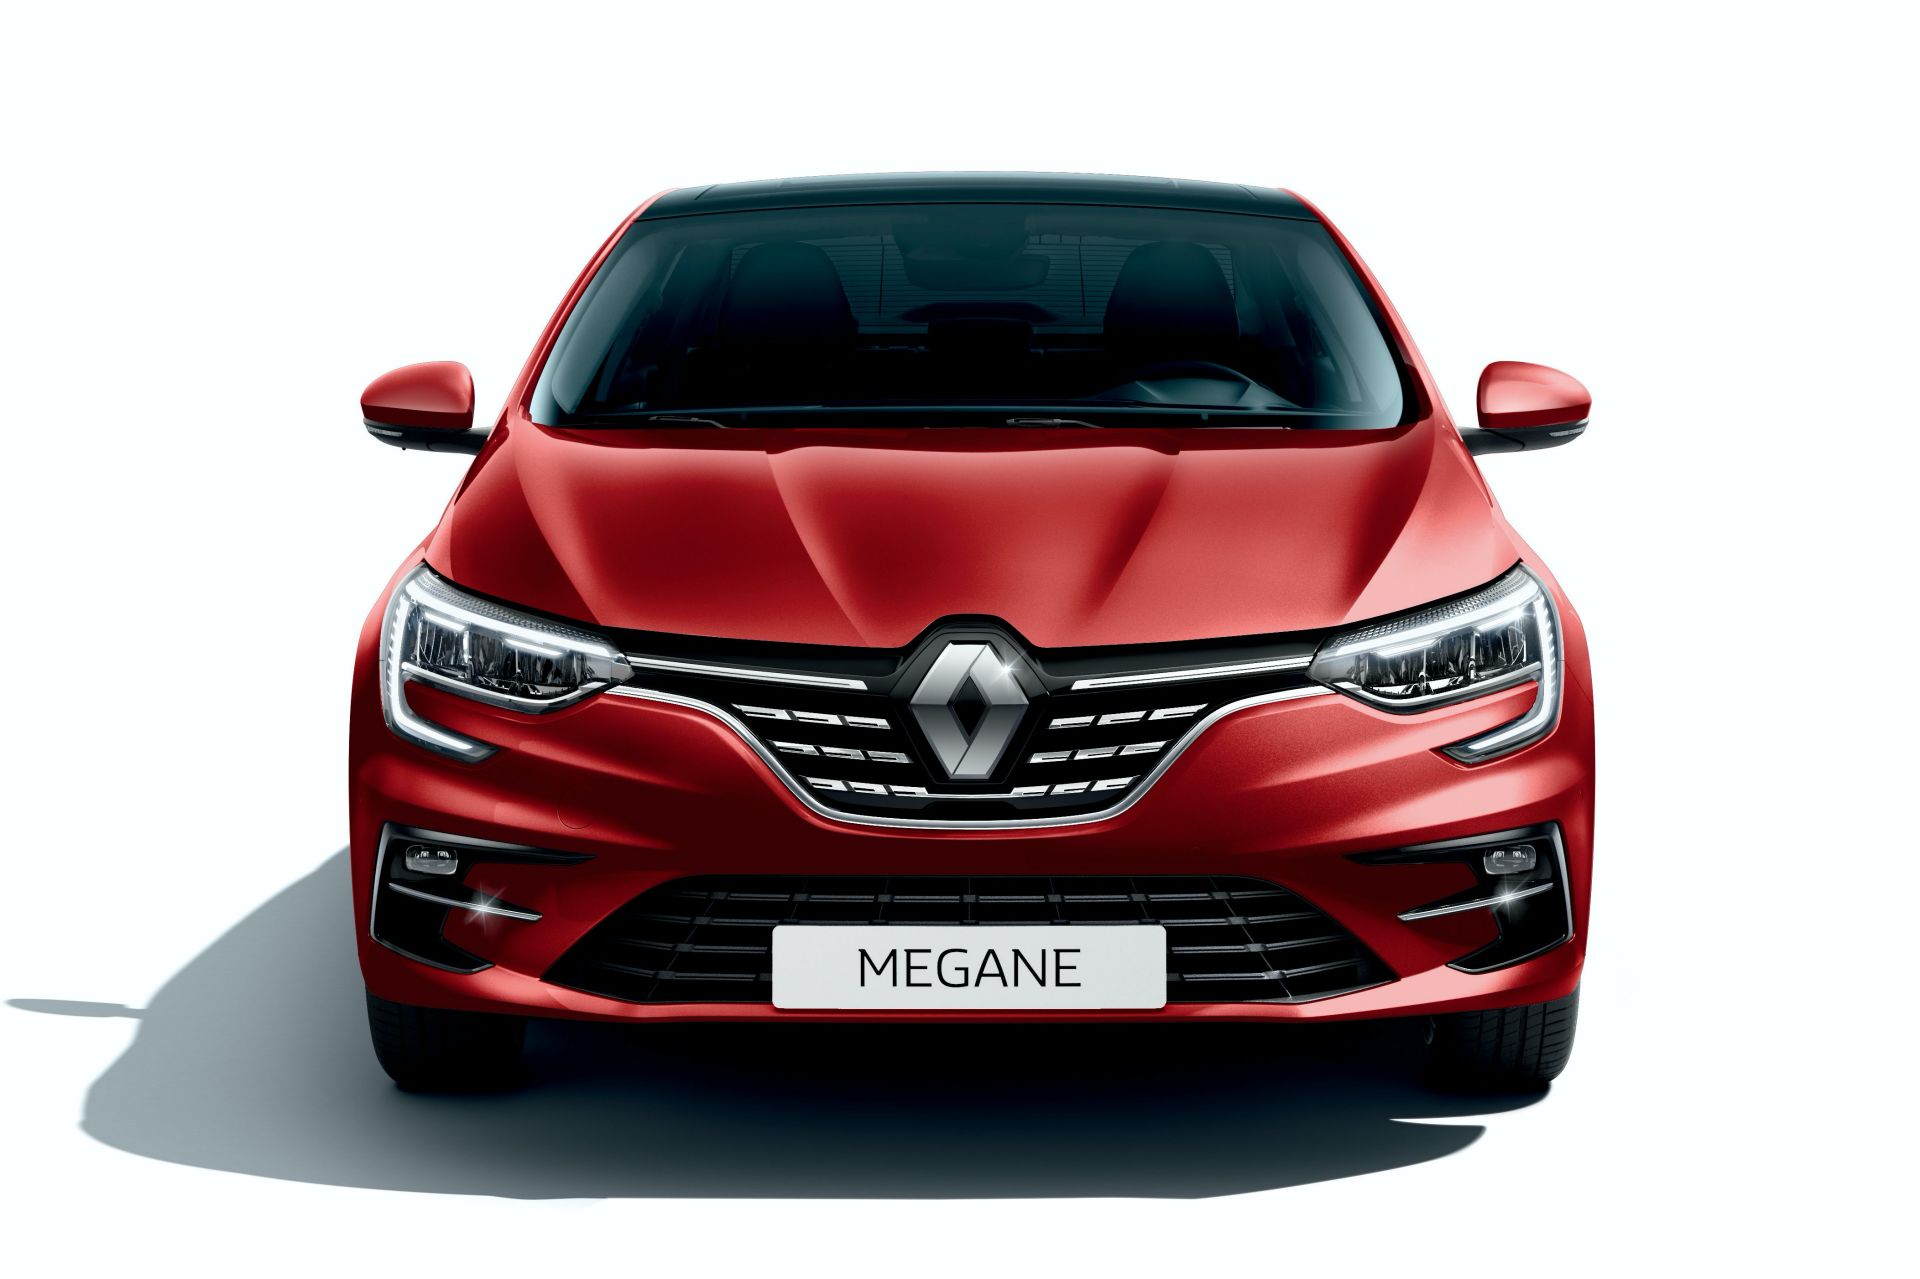 2021 Renault Megane Sedan resim galerisi (28.10.2020)